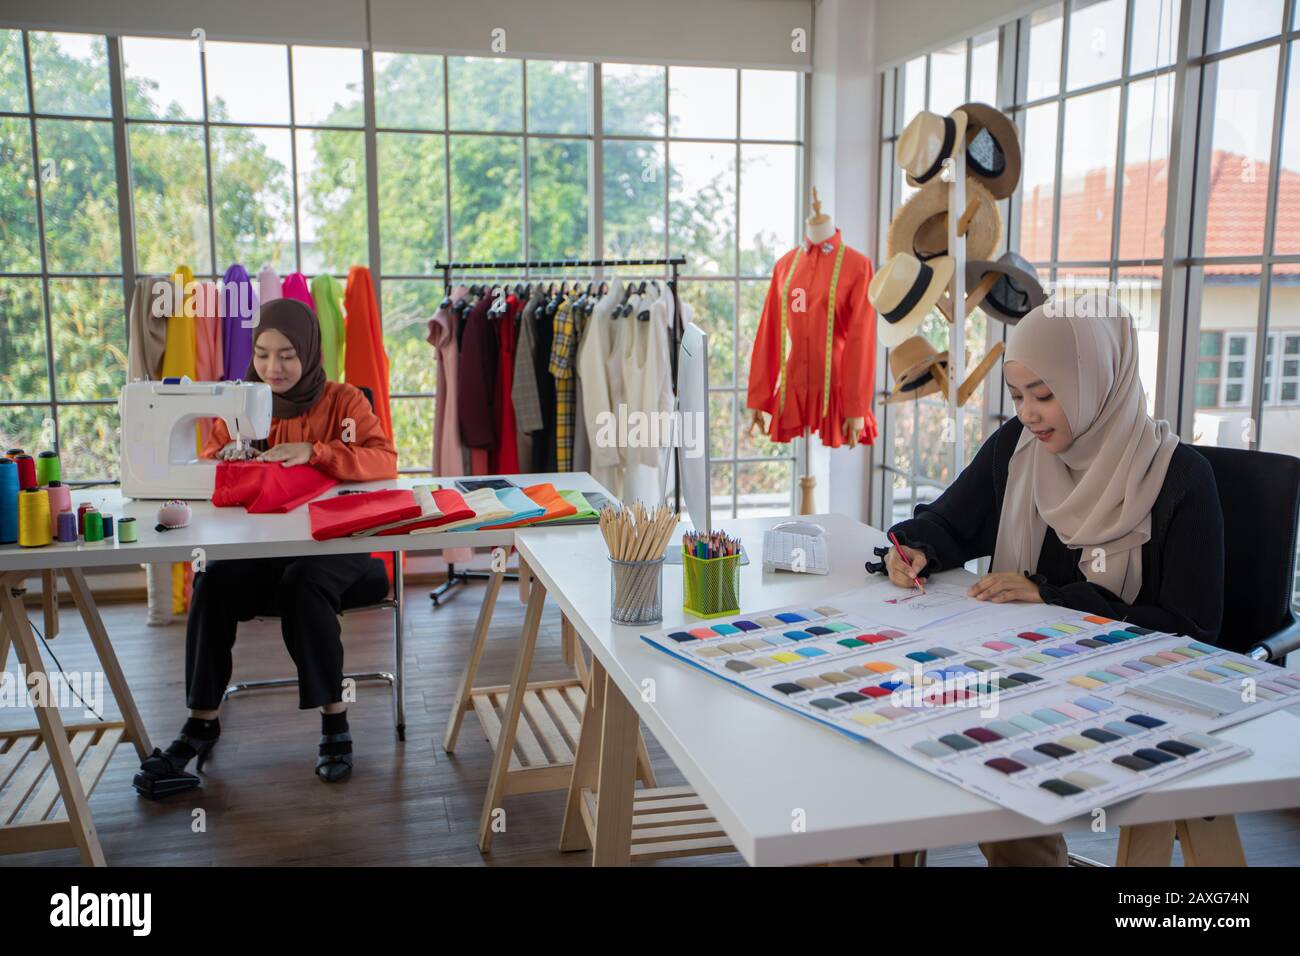 Kleine Unternehmen von Moslem-Frauen Modedesignerin, Die Mit Smartphone und Tablet Mit Kleider im Bekleidungsgeschäft arbeitet und verwendet Stockfoto